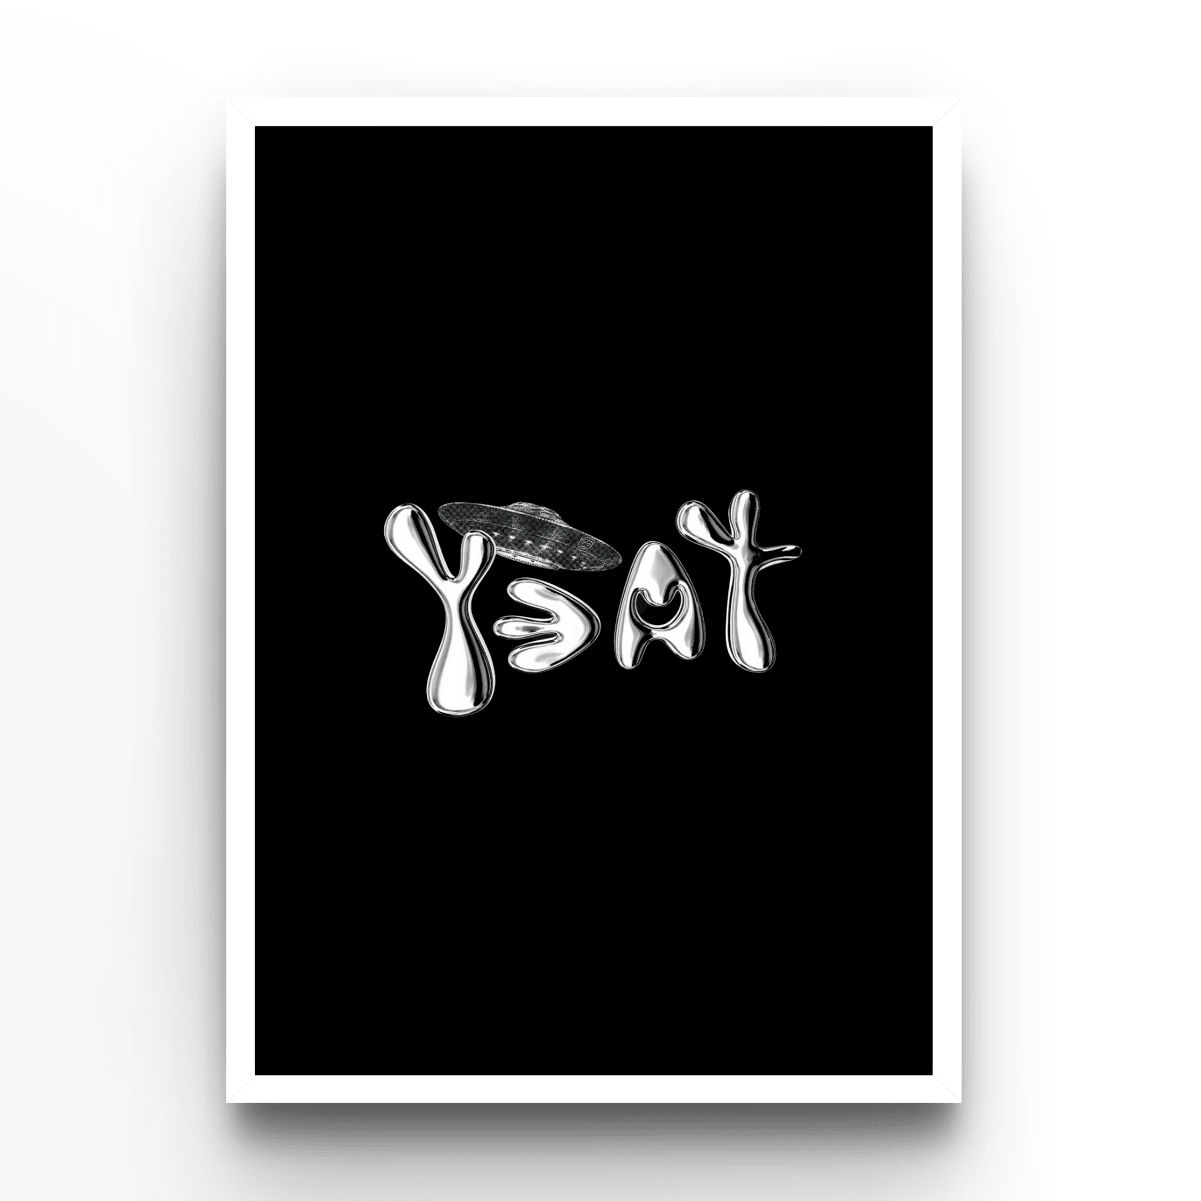 Yeat Logo - A4, A3, A2 Posters Base - Poster Print Shop / Art Prints / PostersBase